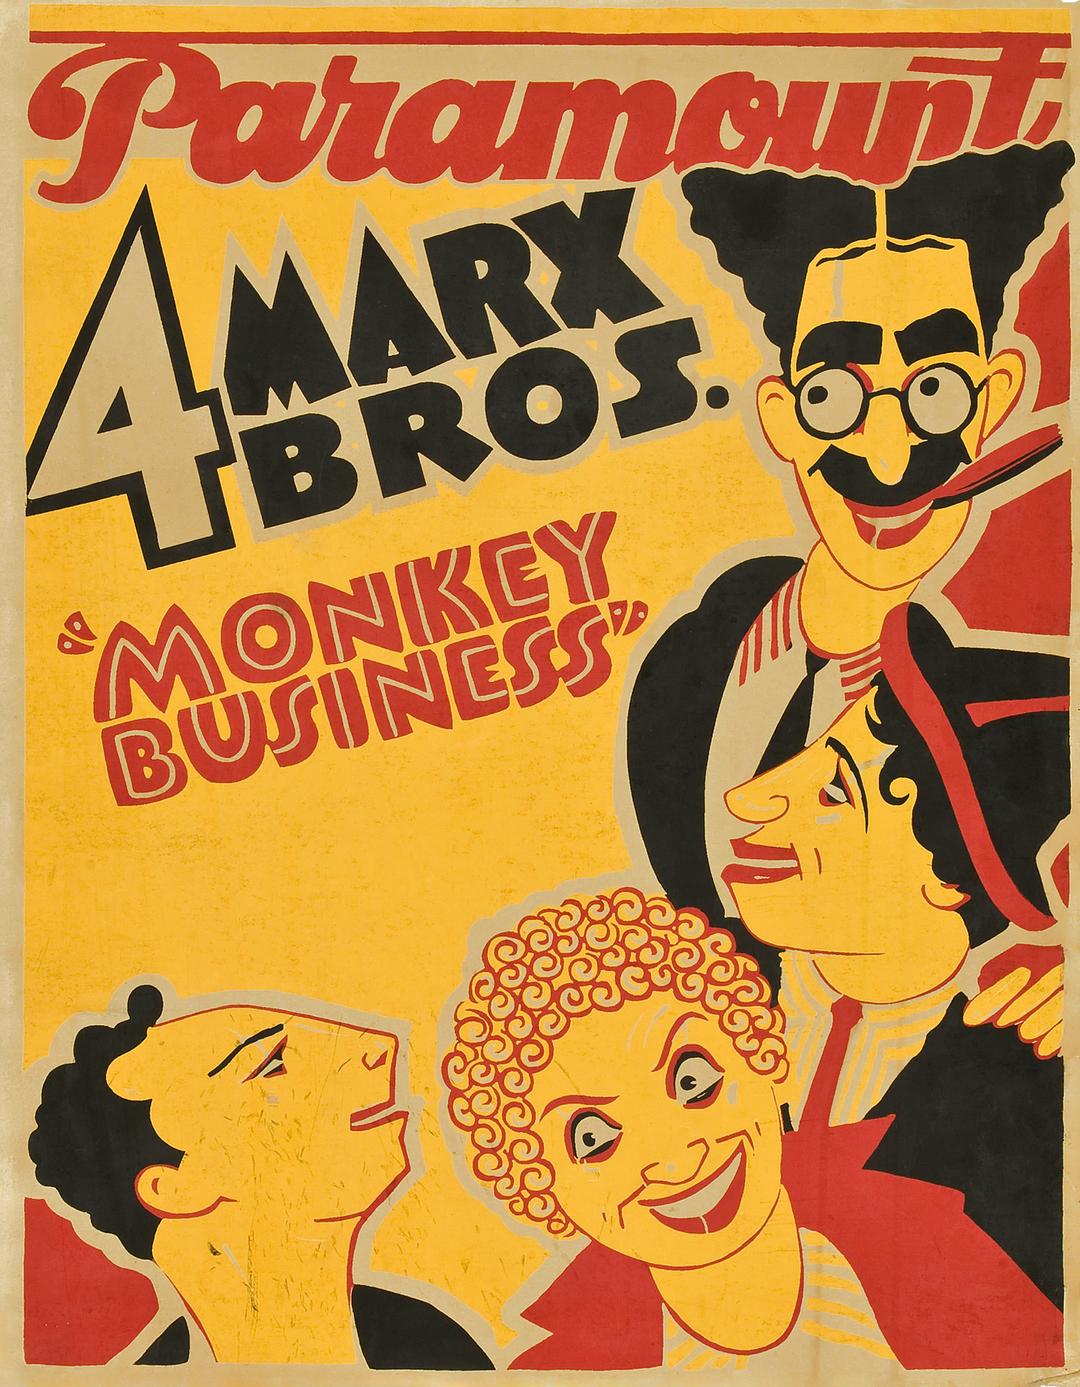  恶作剧/骗人把戏 Monkey.Business.1931.1080p.BluRay.x264-SiNNERS 7.65GB 